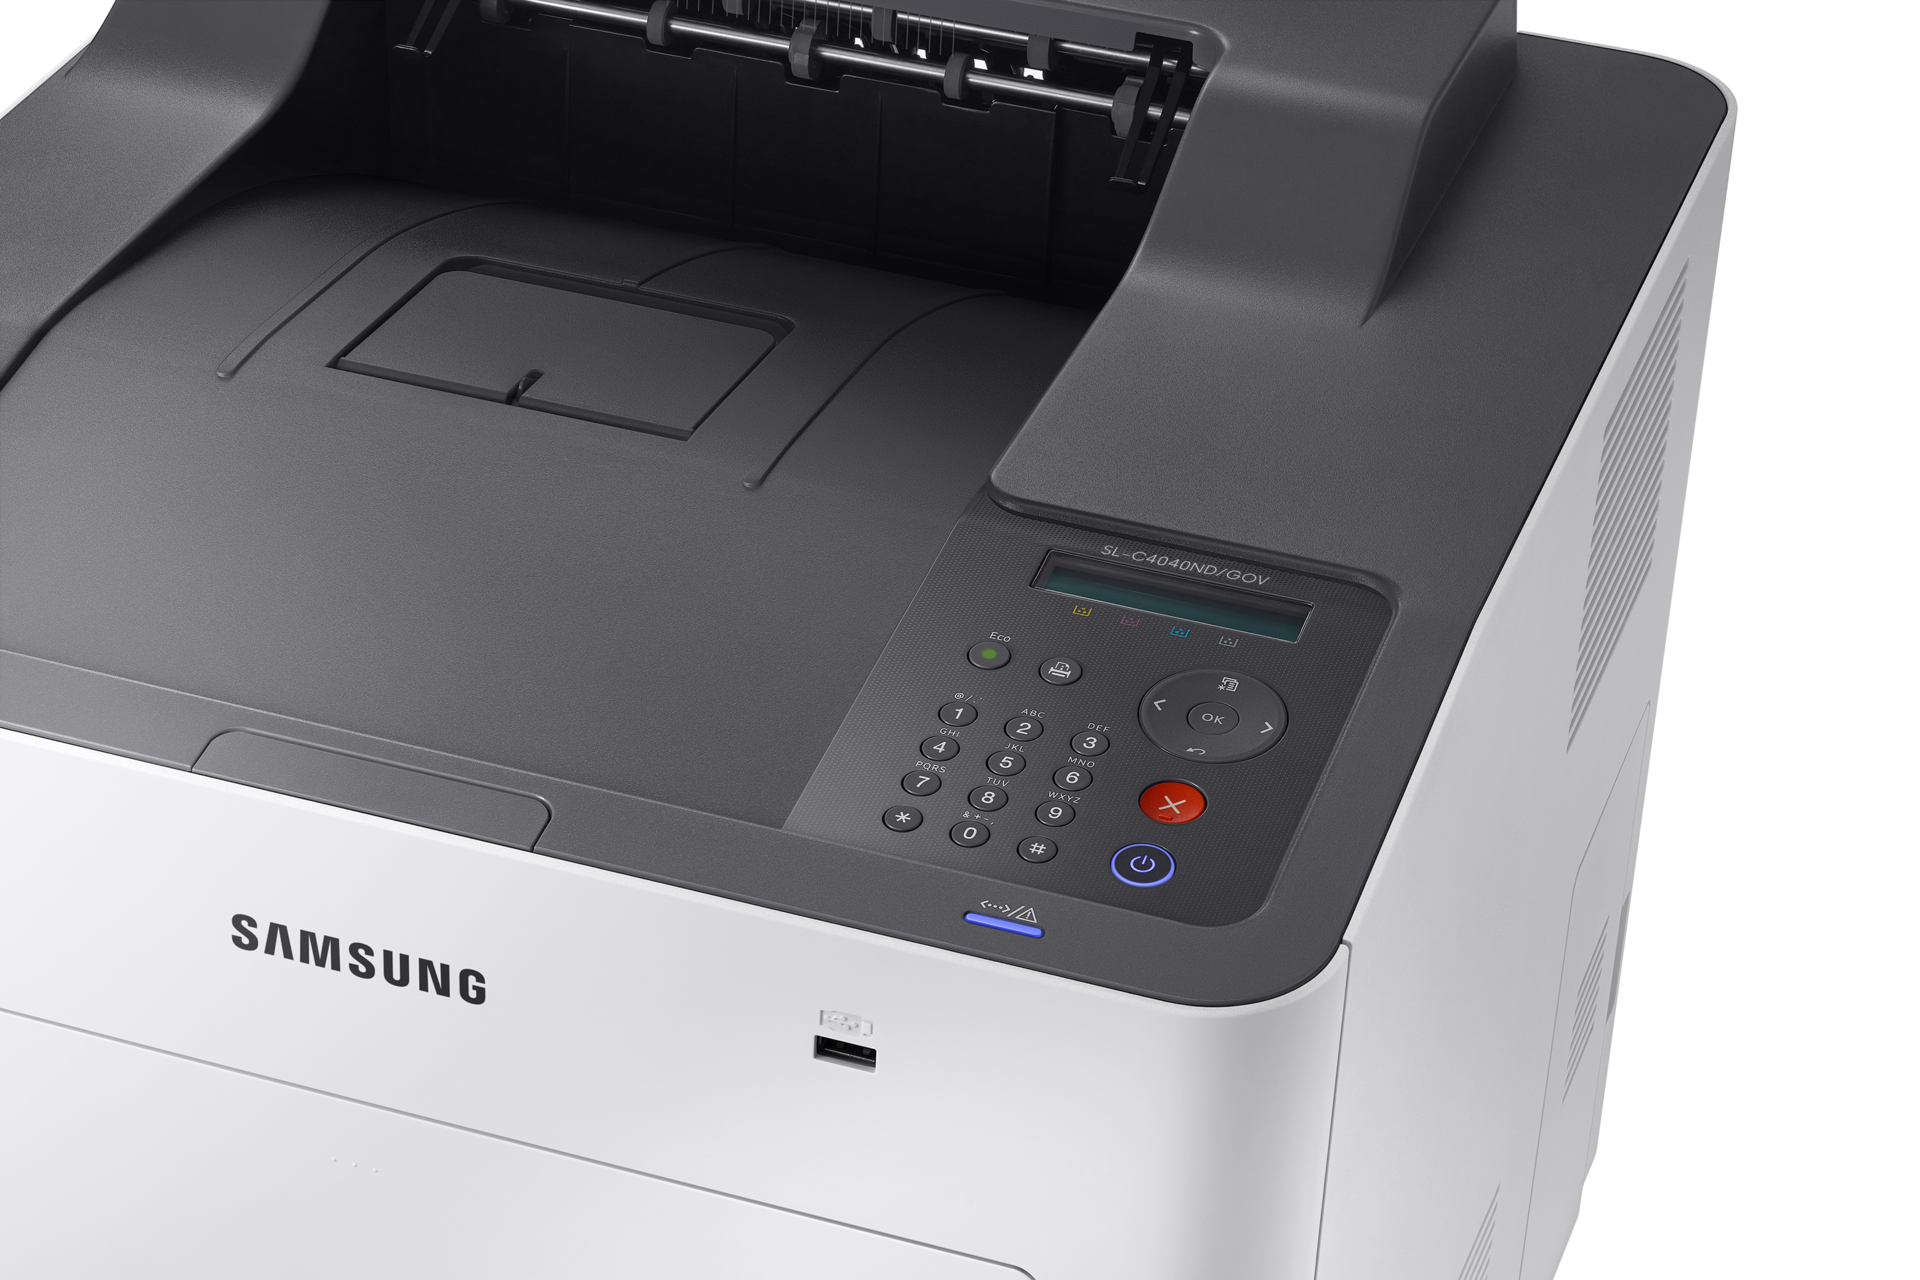 A4 컬러 레이저 프린터 C40 시리즈 40 ppm SL-C4040ND/GOV 오른쪽 45도  위에서 확대한 이미지